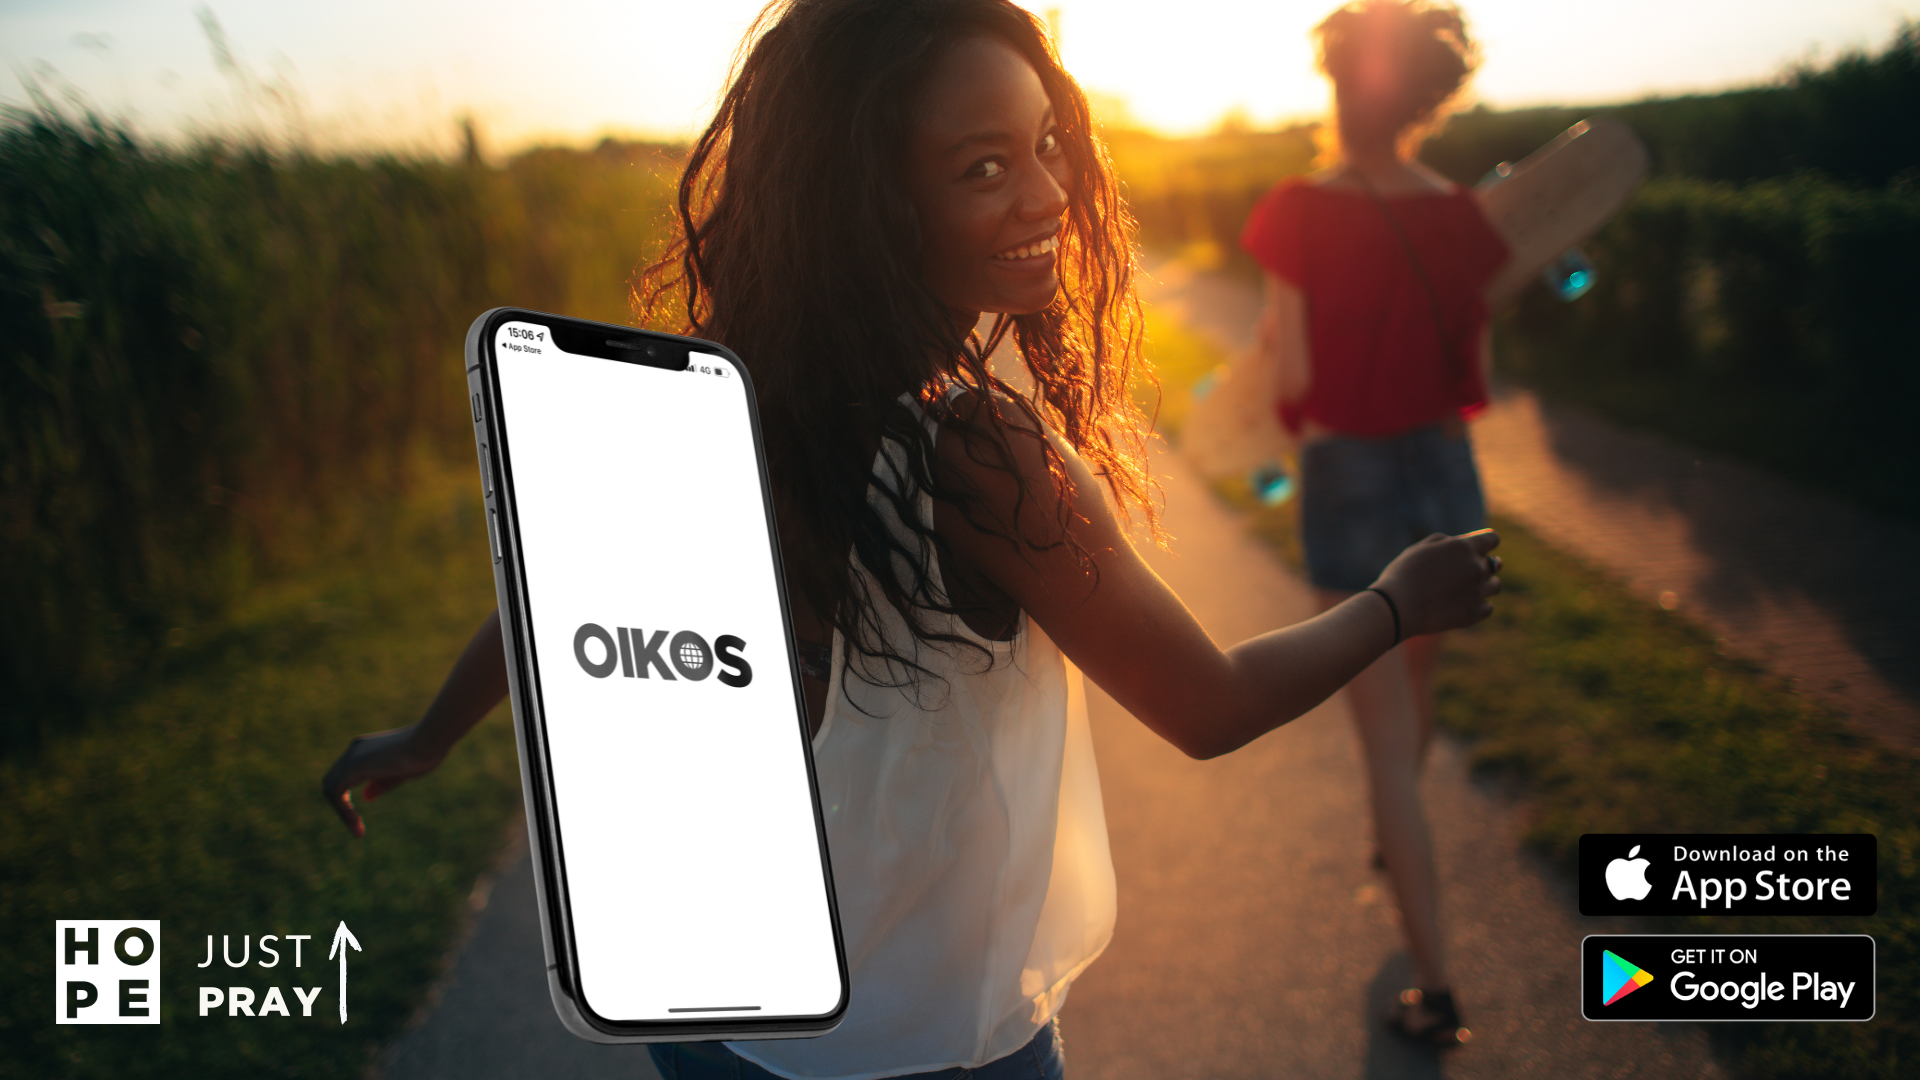 OIKOS app (1920 × 1080 px)